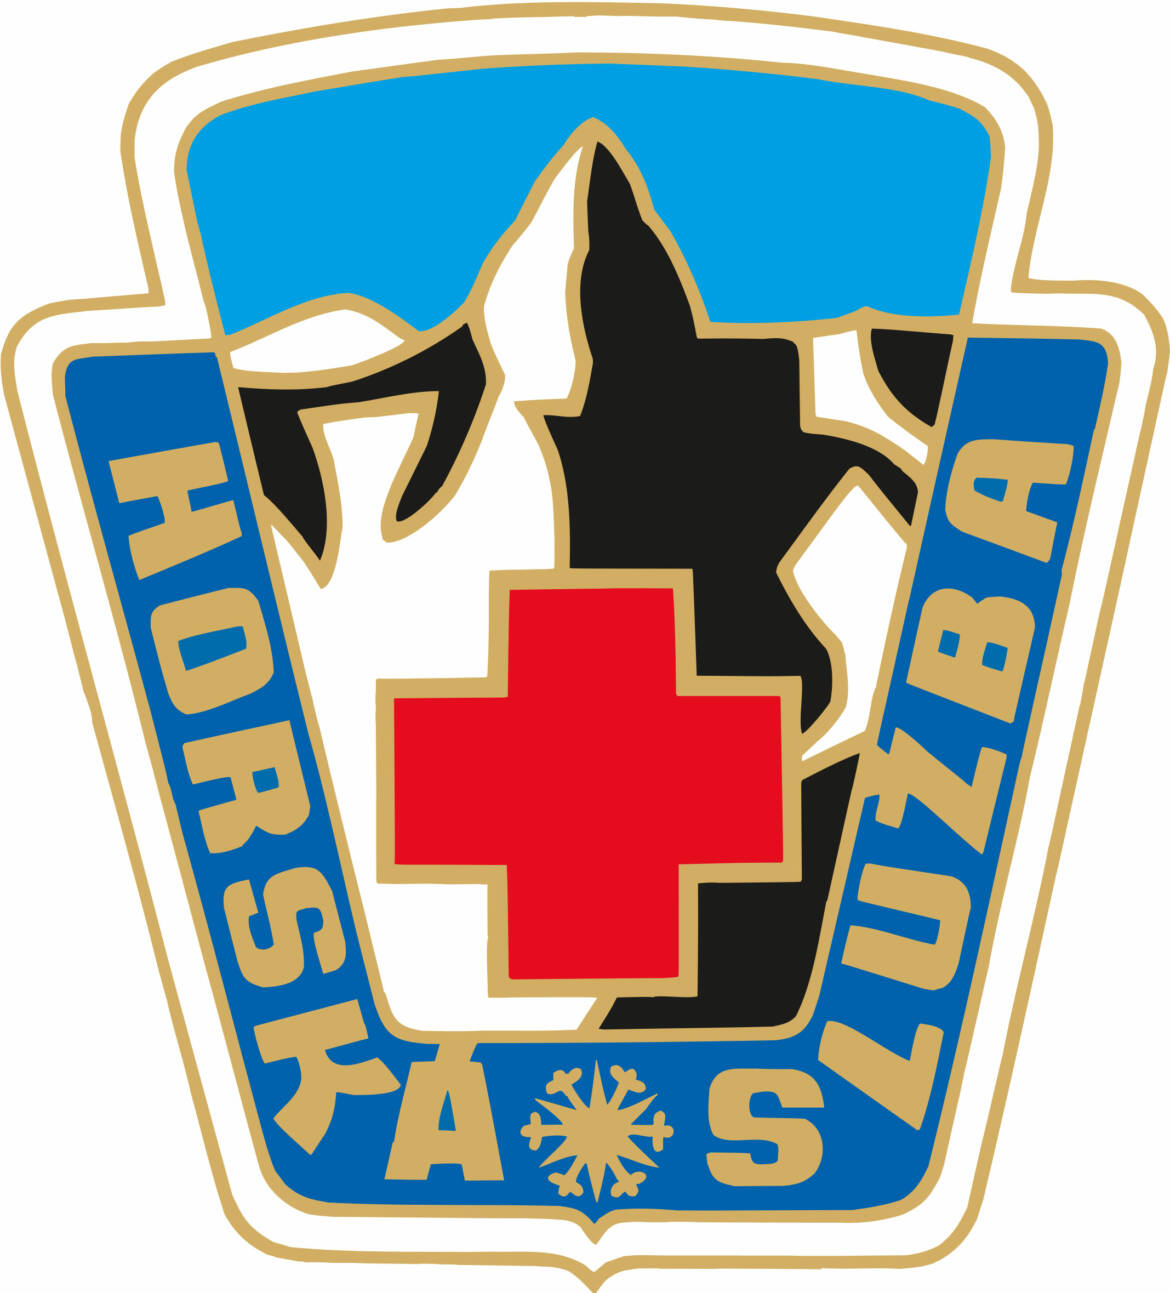 HS_logo.jpg